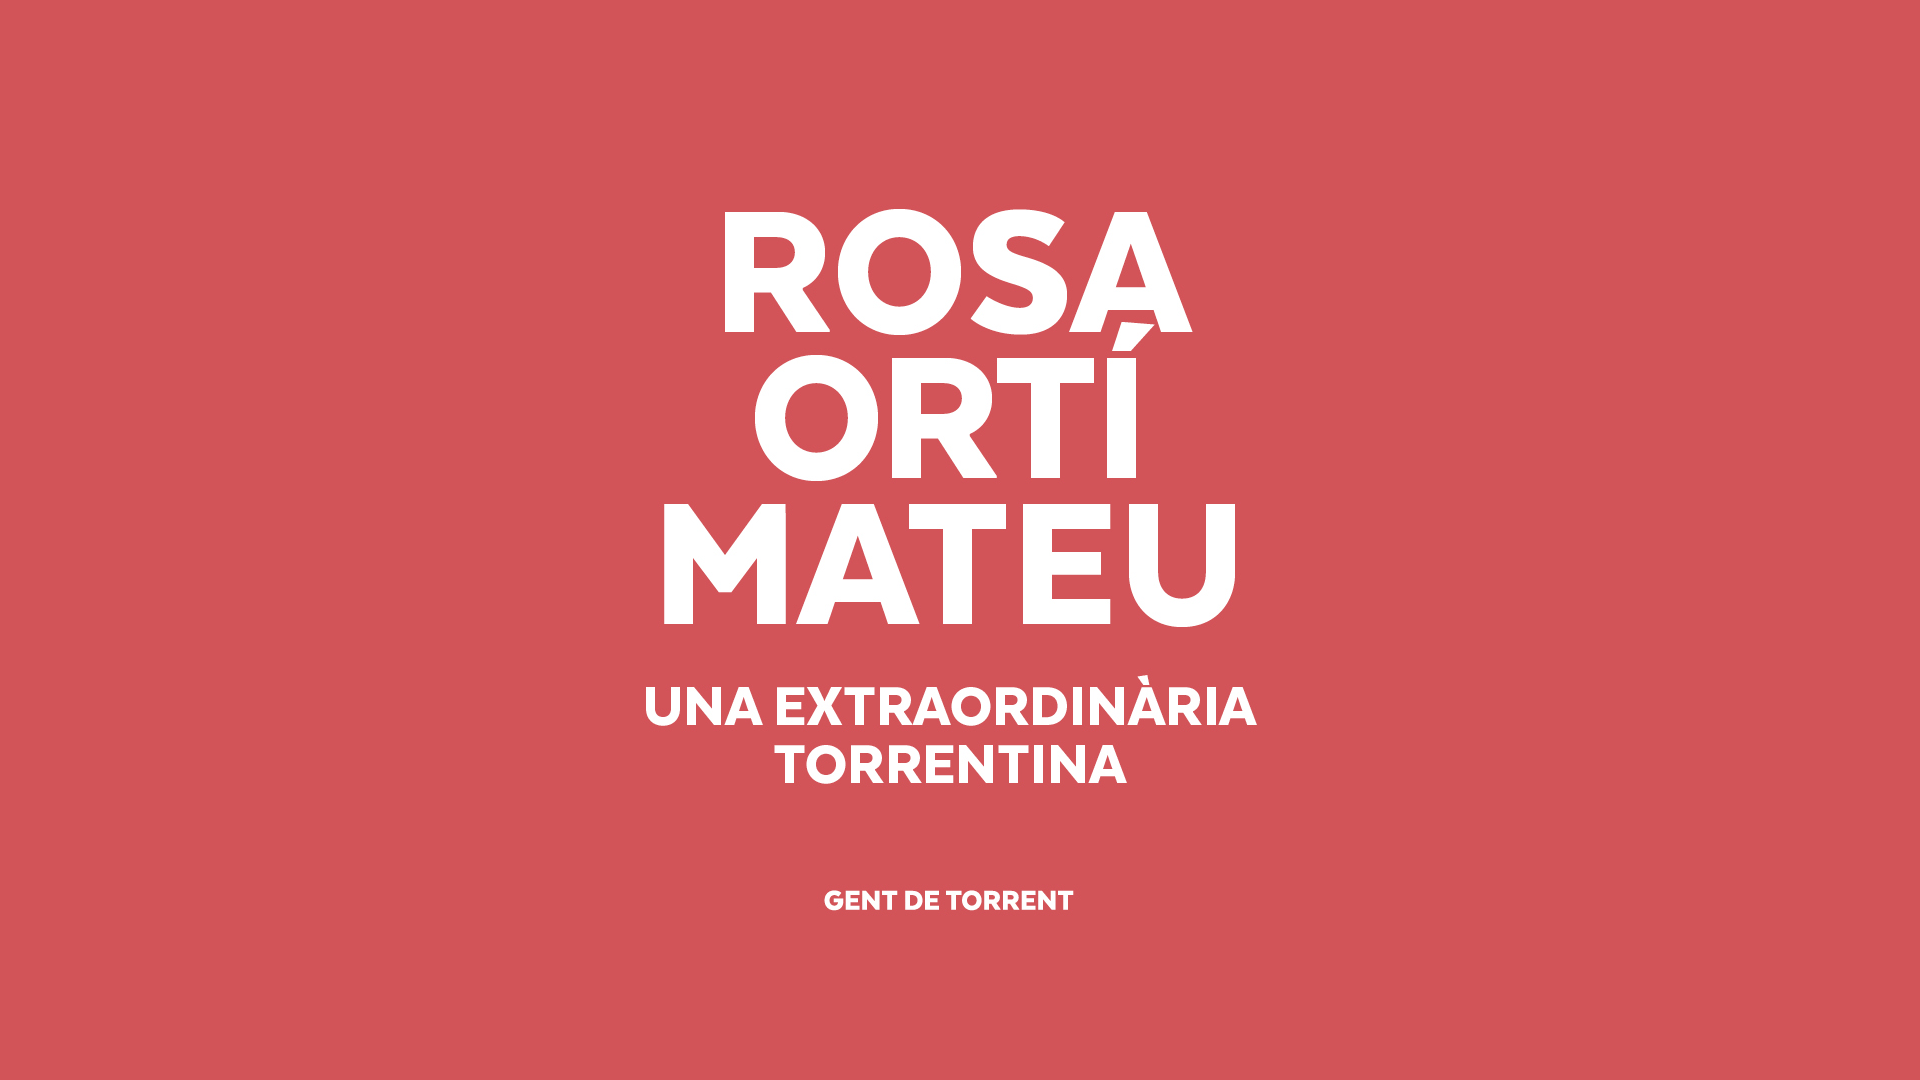 Hija Predilecta de Torrent 2020 / Rosa Ortí, una extraordinaria torrentina